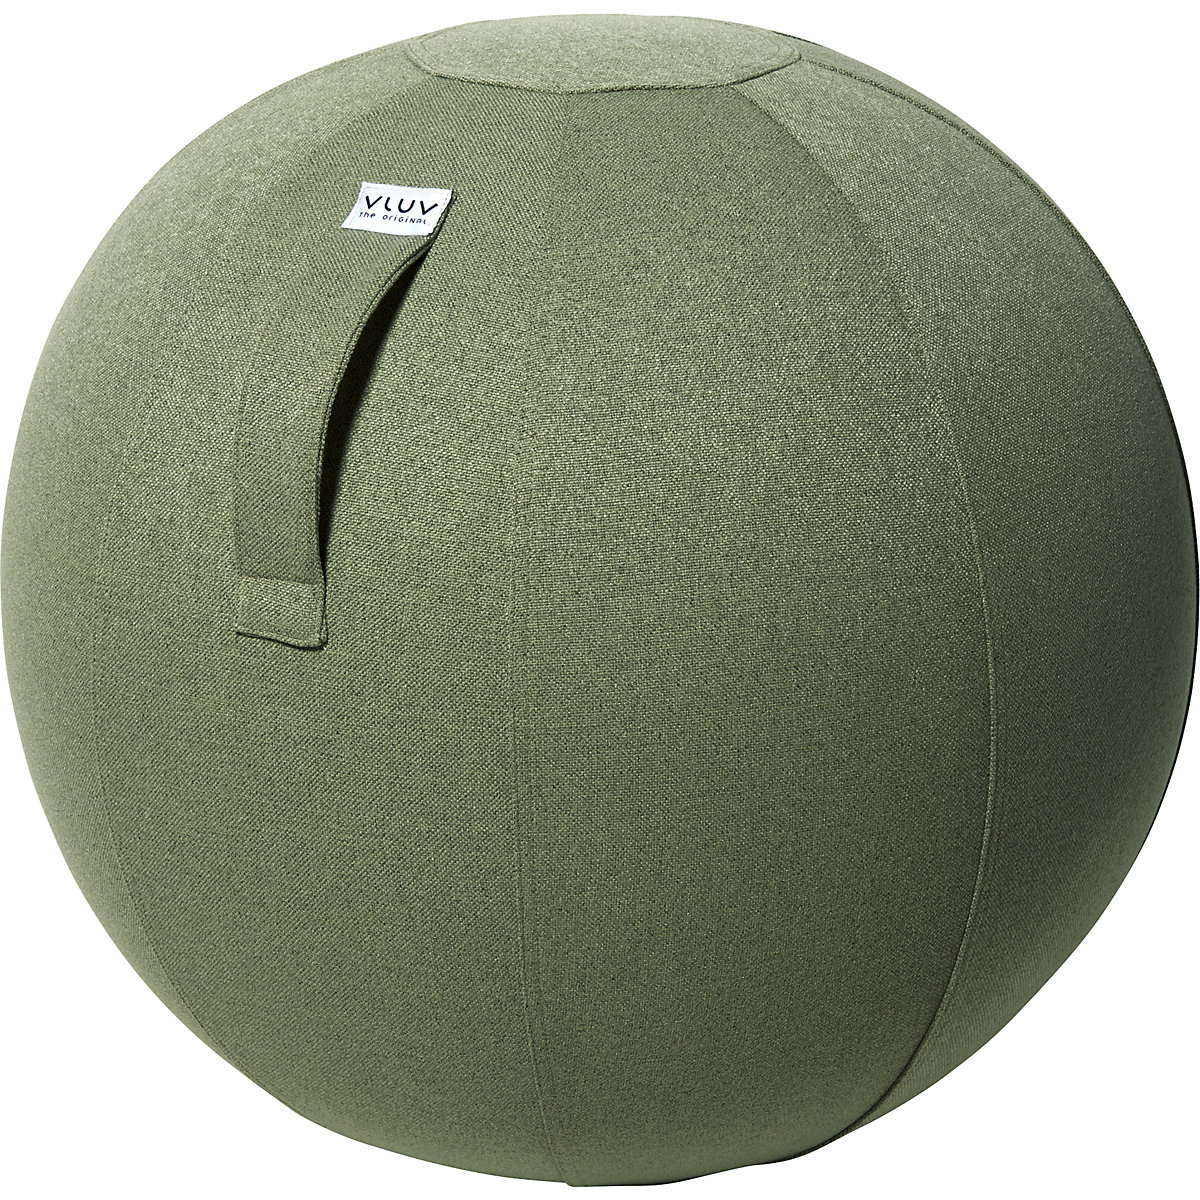 Sedací míč SOVA – VLUV, látkový potah v přírodních odstínech, 600 – 650 mm, zelené pesto-14